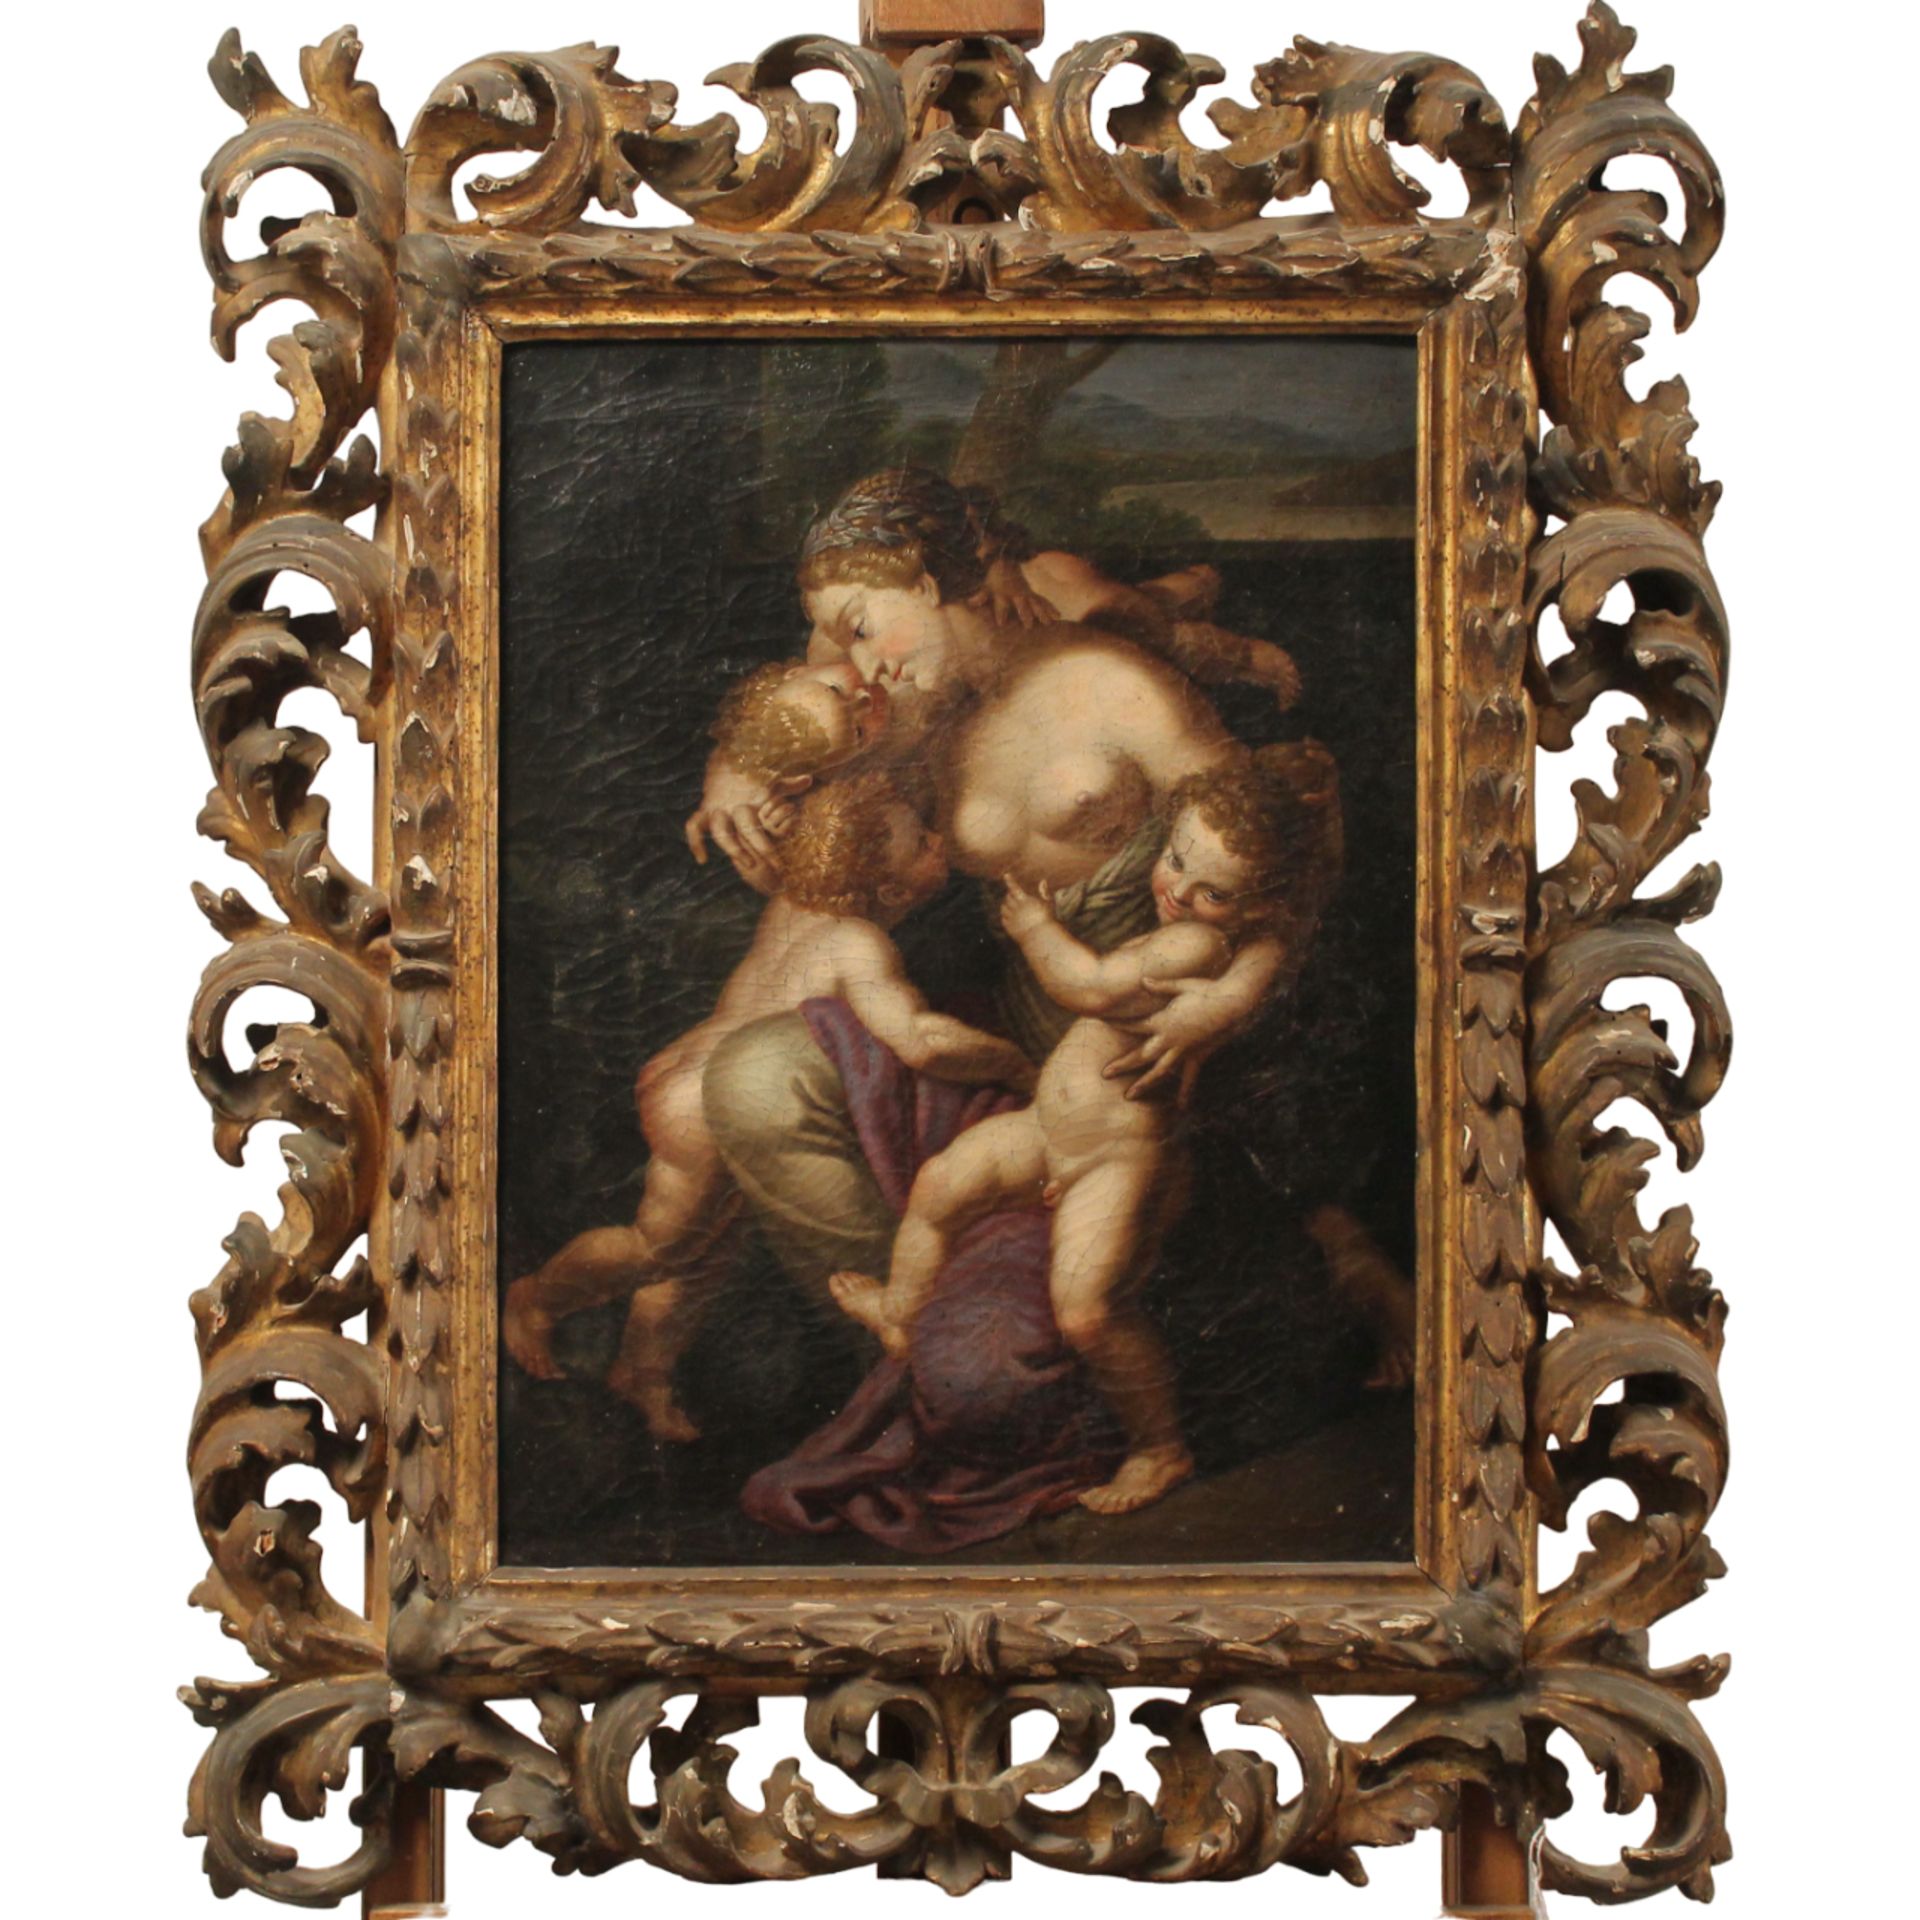 Scuola emiliana della fine del secolo XVII "Amore materno" - Emilian school of the end of the 17th c